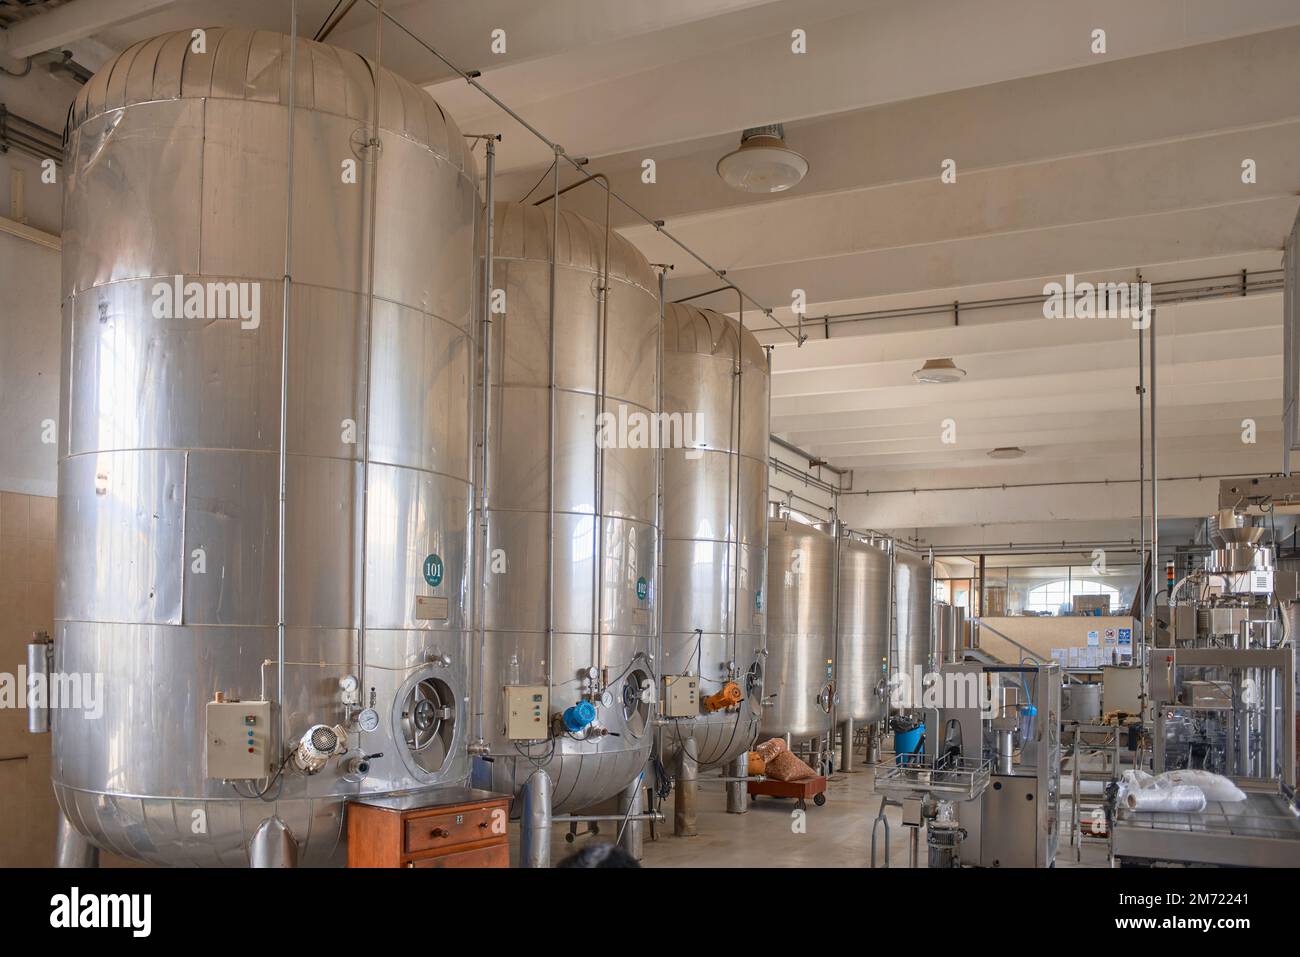 Salle de fermentation de l'usine de vin, machines industrielles, pas de personnes Banque D'Images